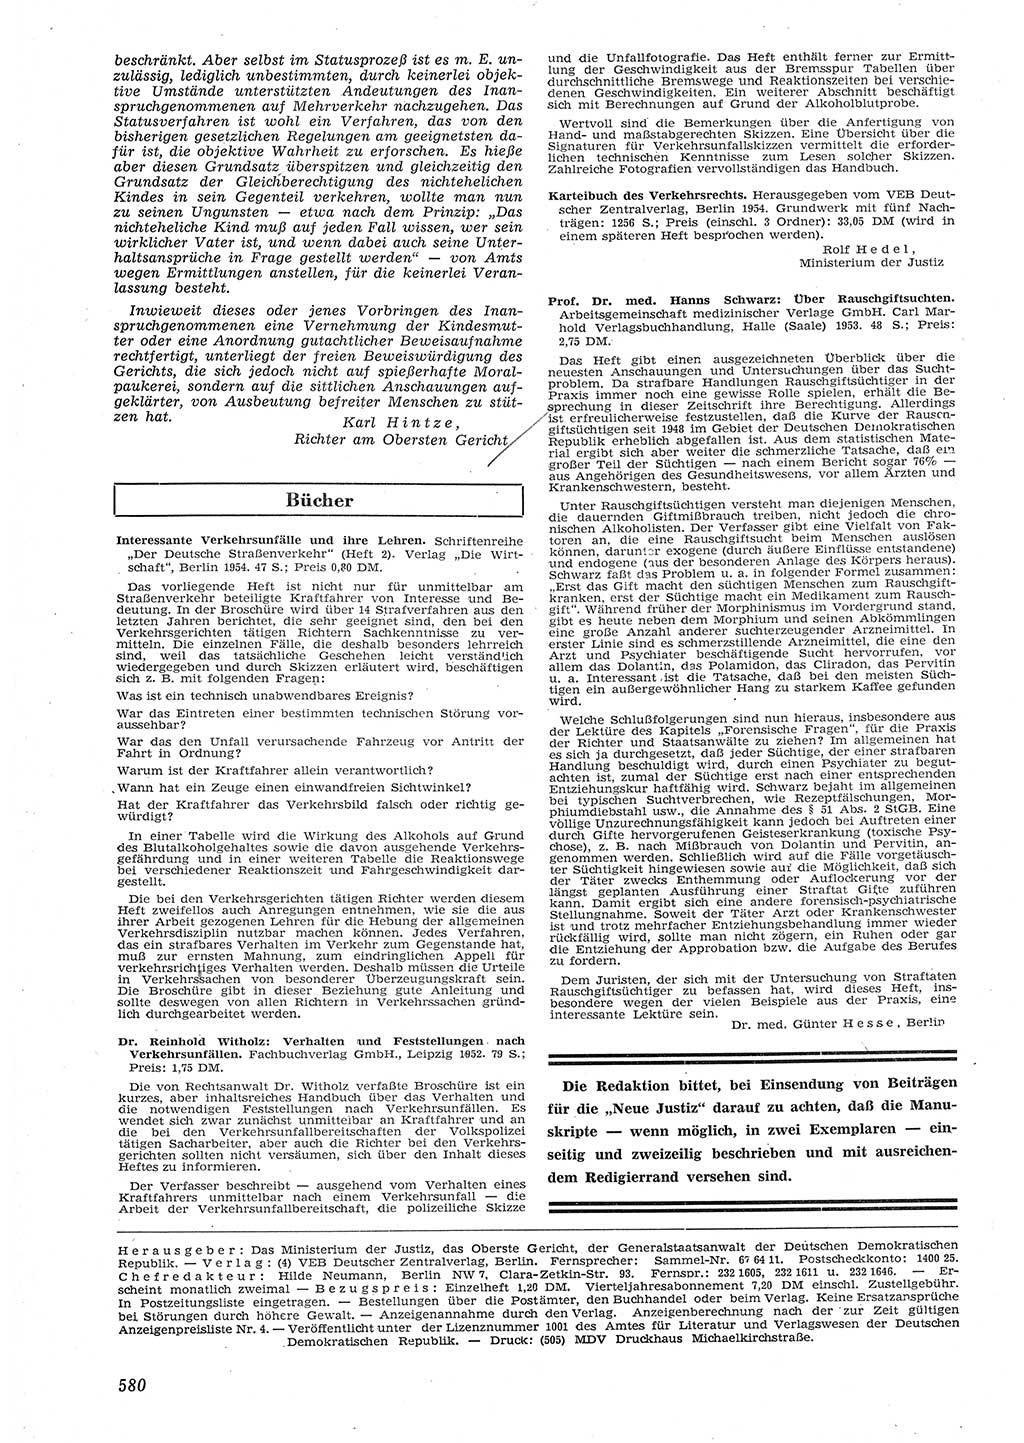 Neue Justiz (NJ), Zeitschrift für Recht und Rechtswissenschaft [Deutsche Demokratische Republik (DDR)], 8. Jahrgang 1954, Seite 580 (NJ DDR 1954, S. 580)